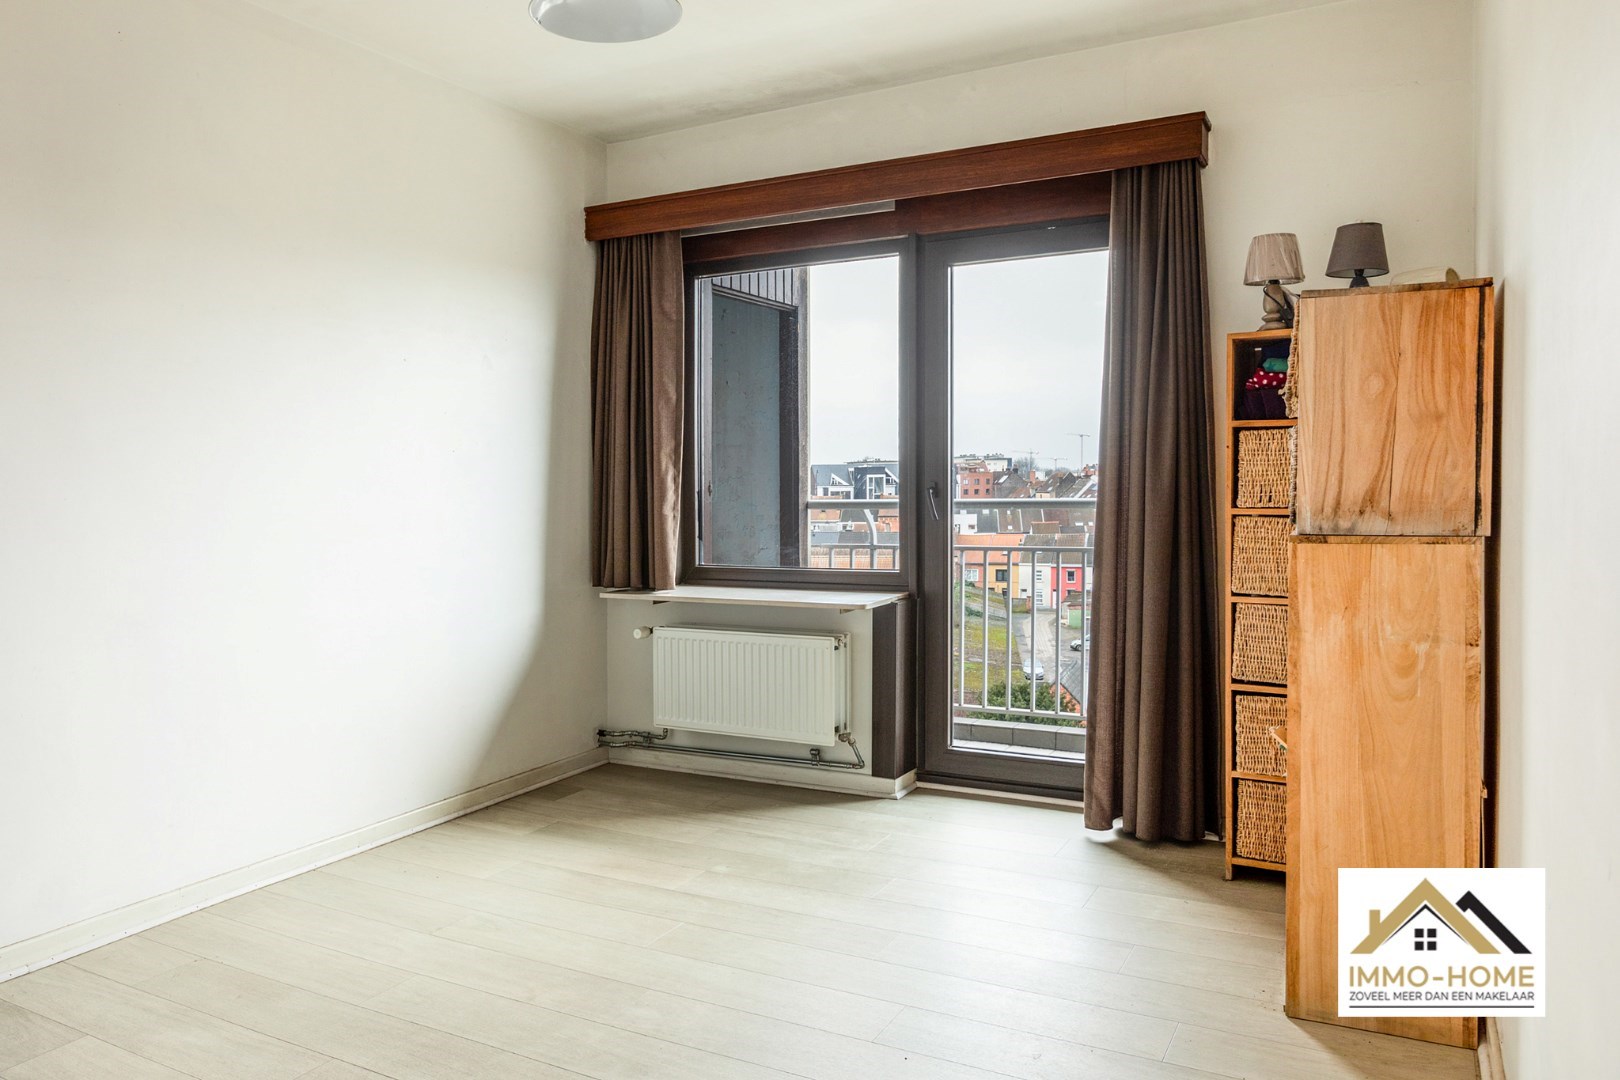 Ruim appartement met veel lichtinval, rand Ledeberg/Gent foto 10